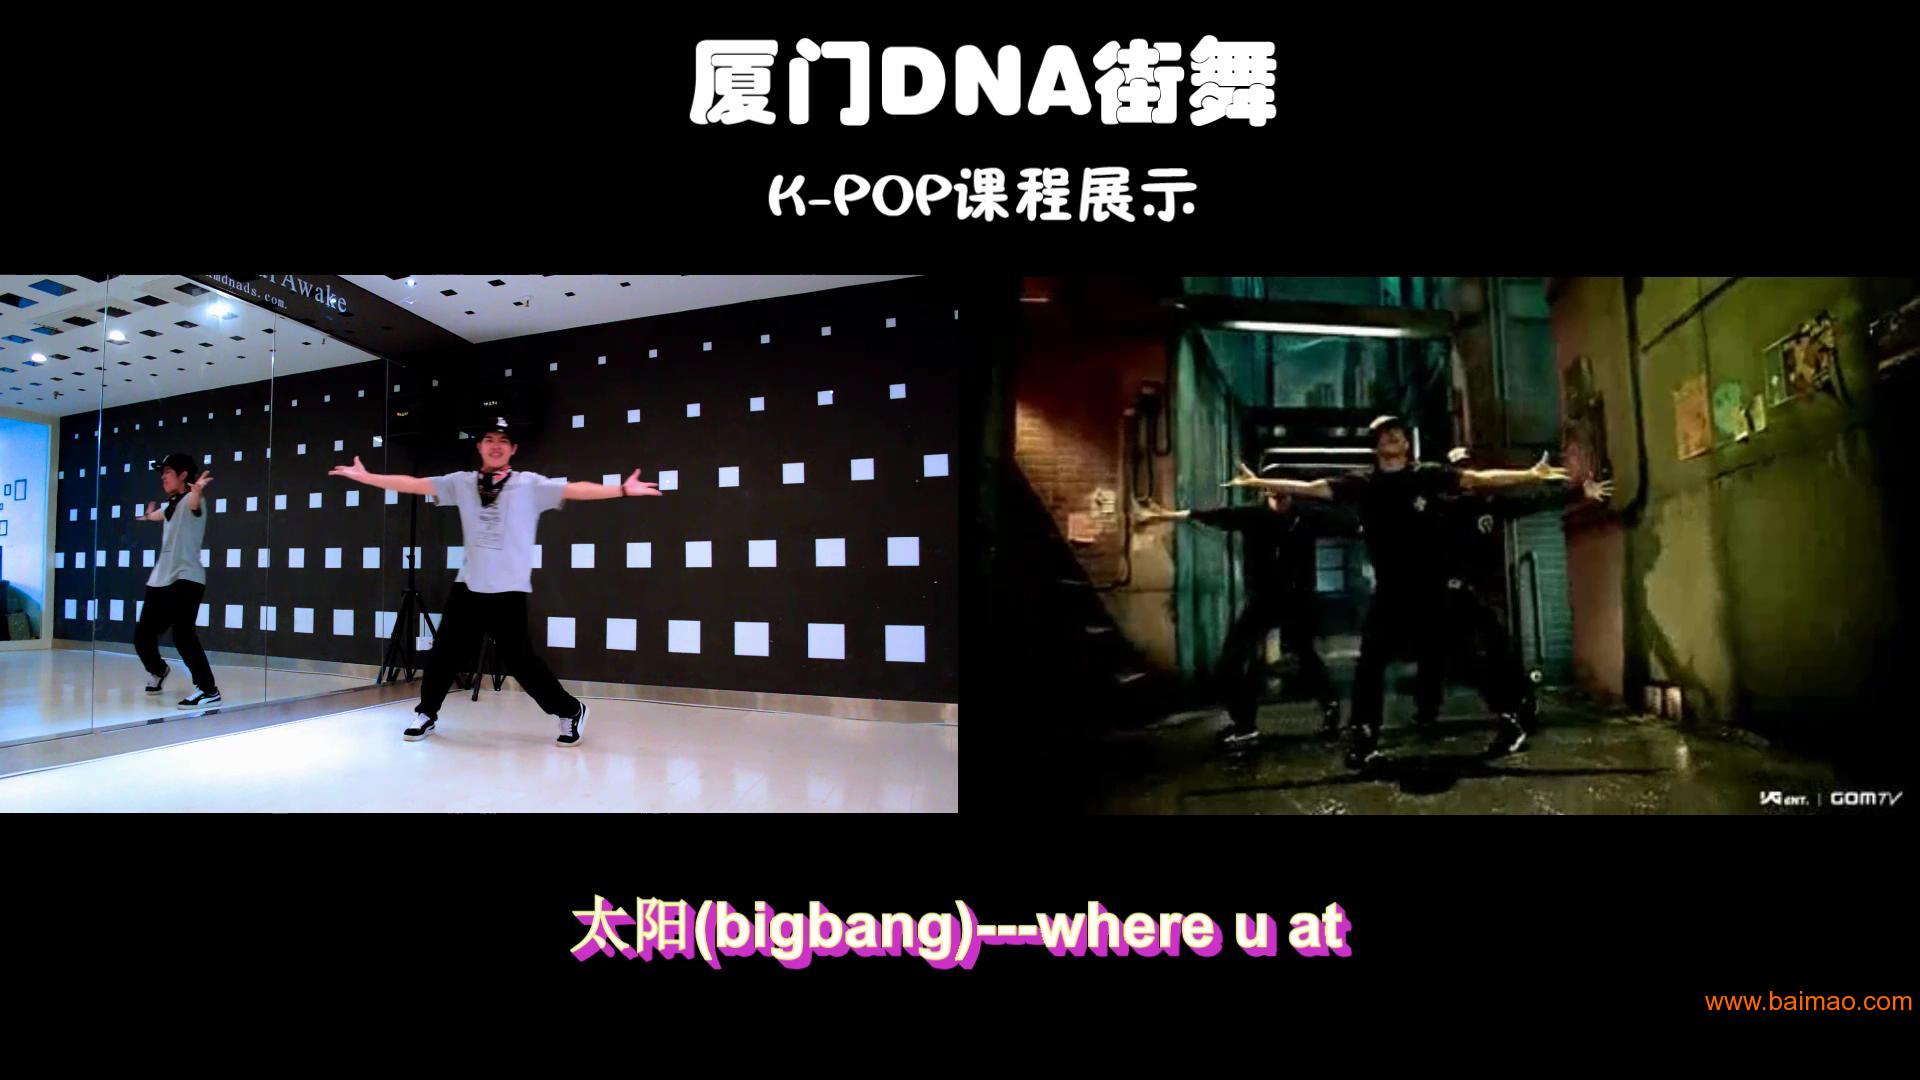 厦门DNA街舞K-POP舞蹈,bigbangEXO舞蹈教